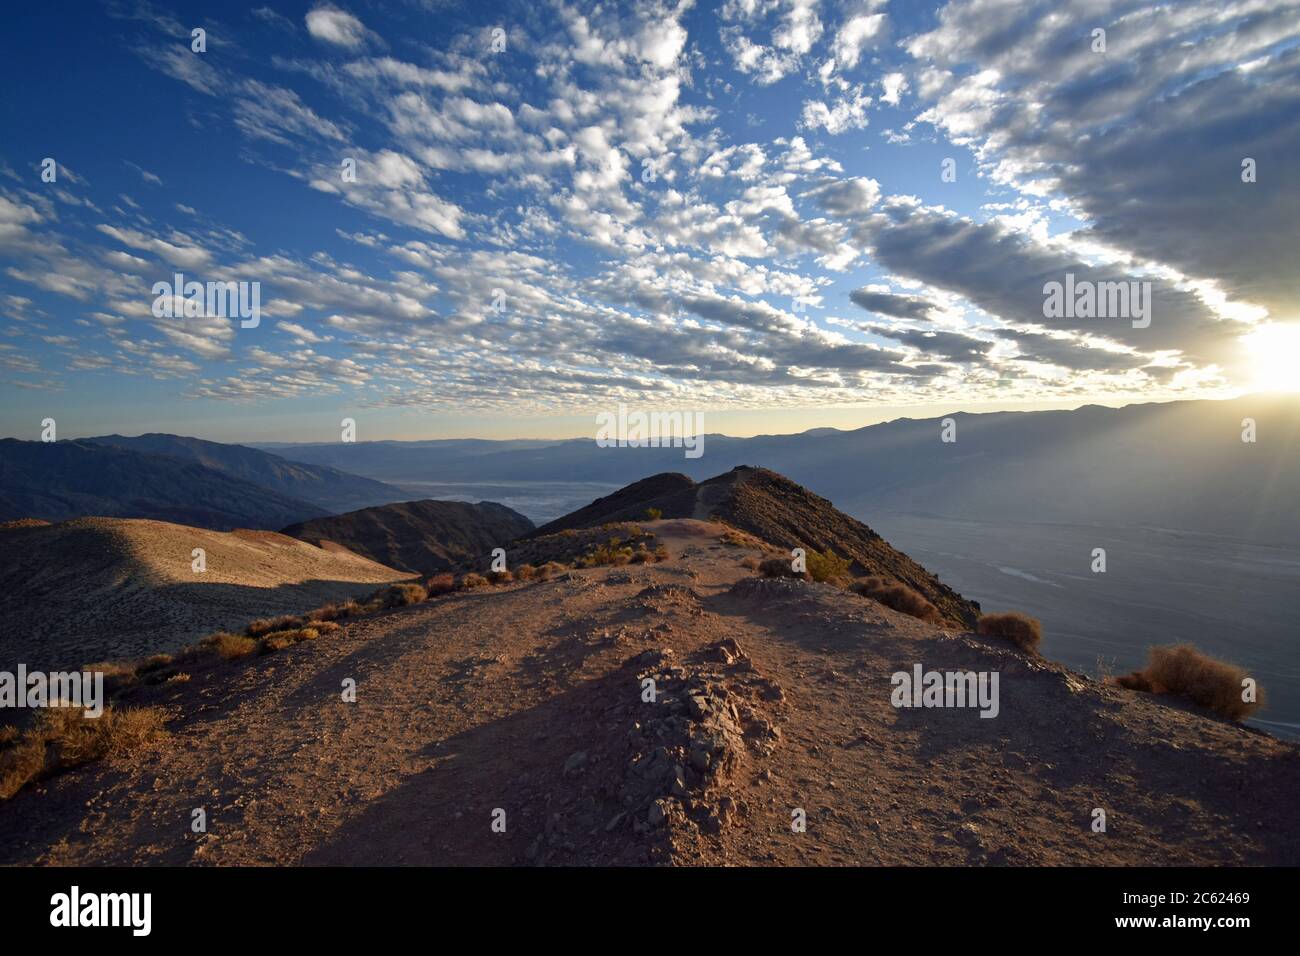 Coucher de soleil à Dantes, vue sur la Vallée de la mort. Un chemin mène vers le bord de la chaîne de montagnes. Le soleil couchant traverse les nuages. Banque D'Images